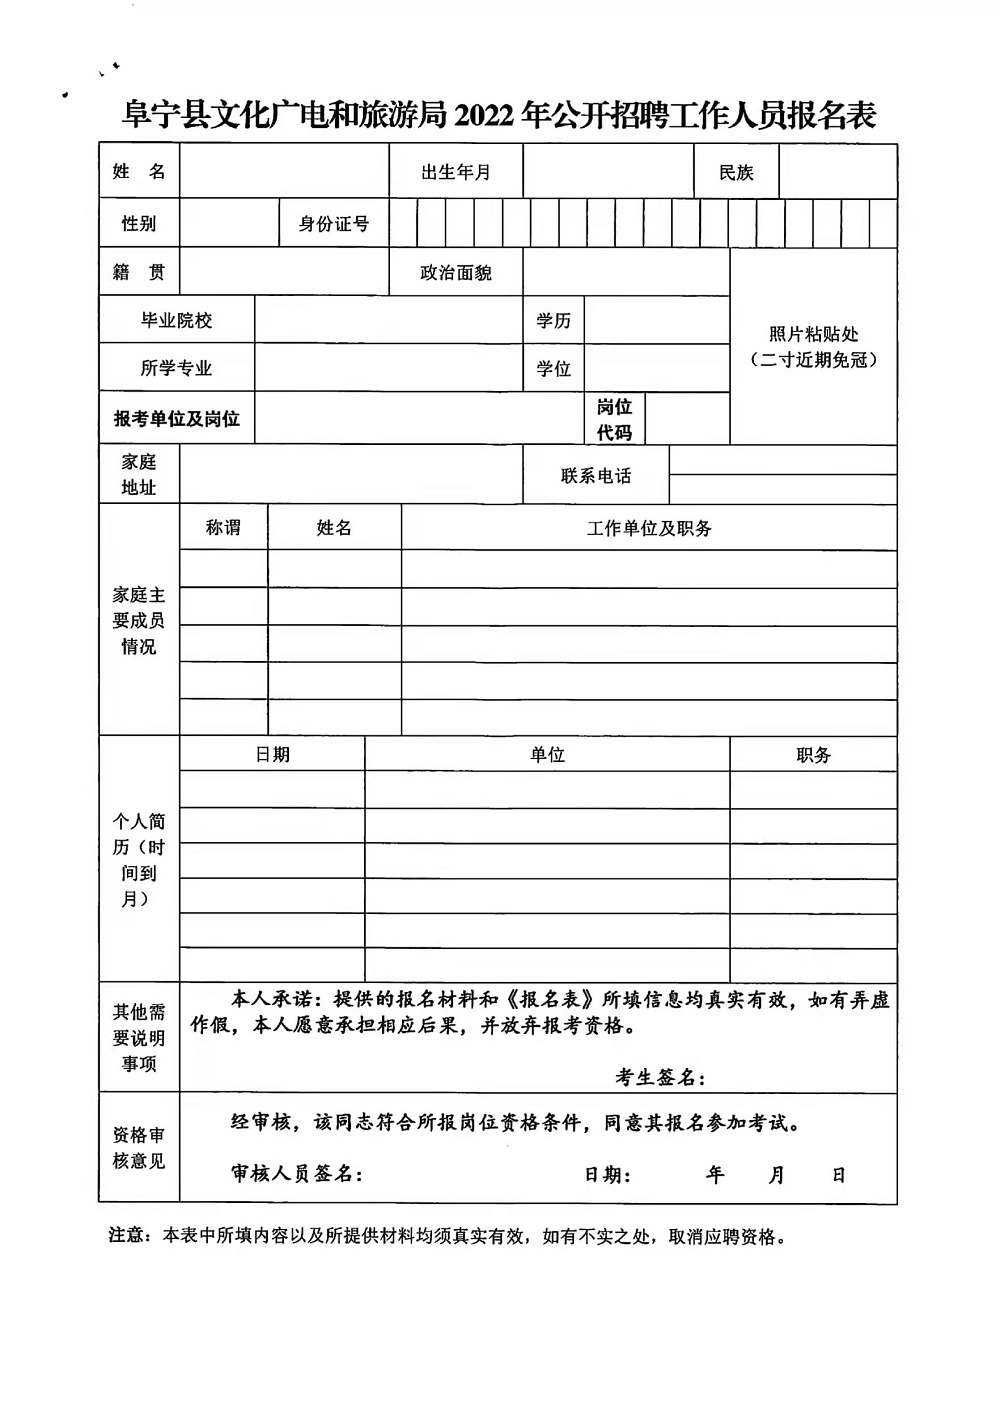 阜宁县文化广电和旅游局招聘事业编制人员7名